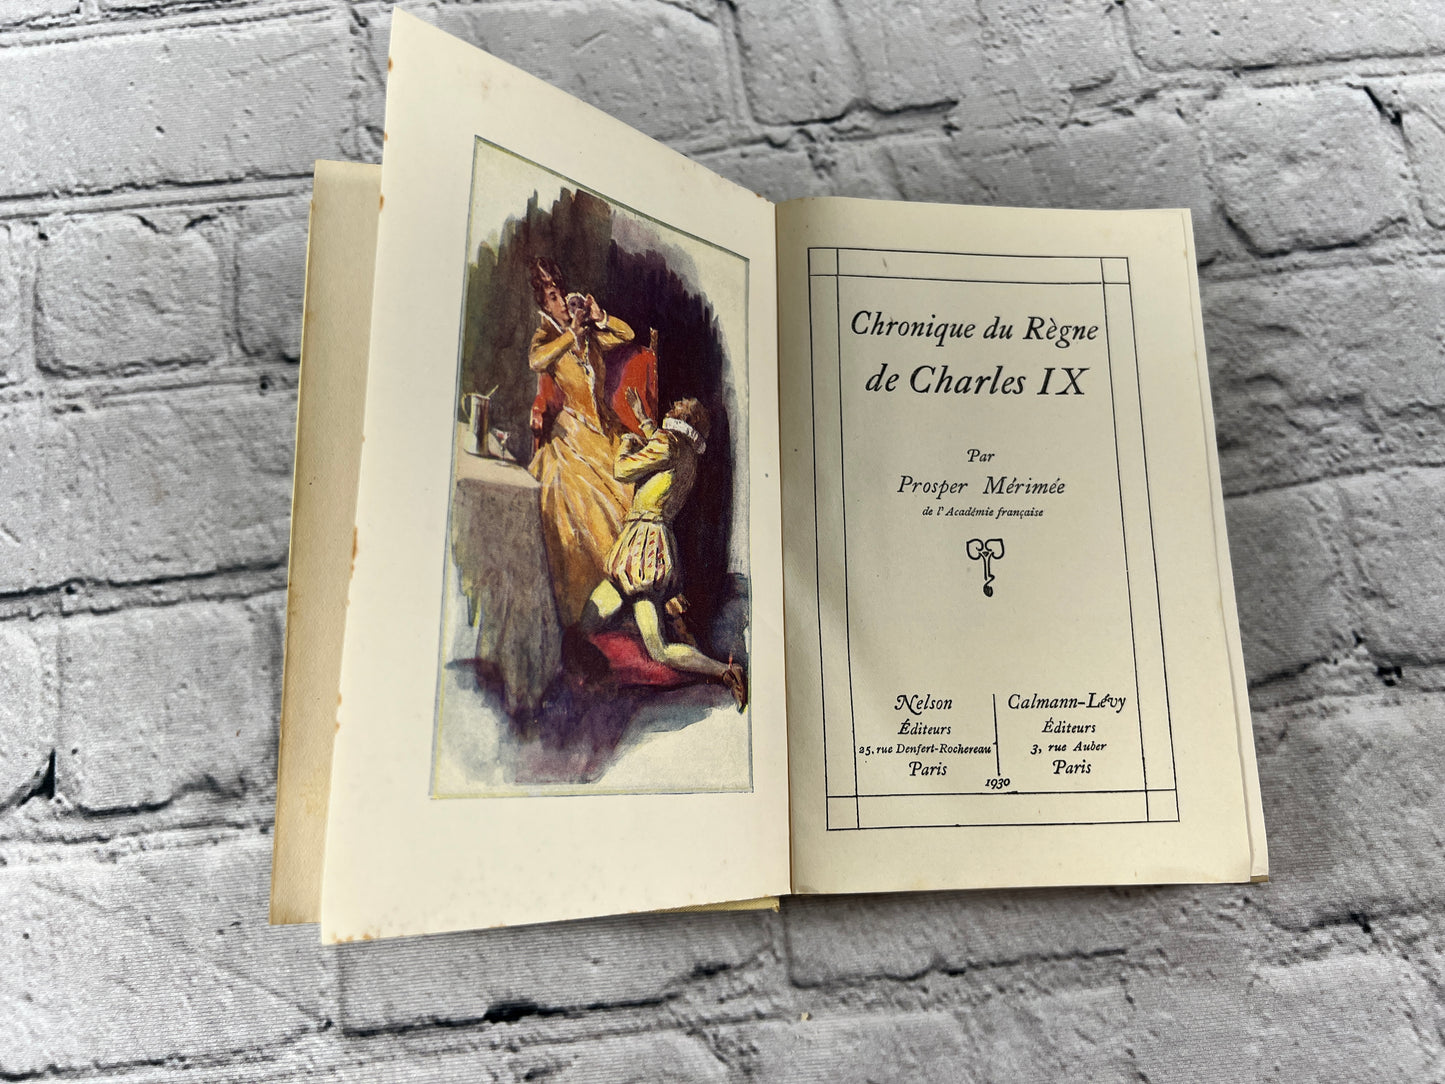 Chronique de Regne de Charles IX by Prosper Merimee [Paris · 1930]